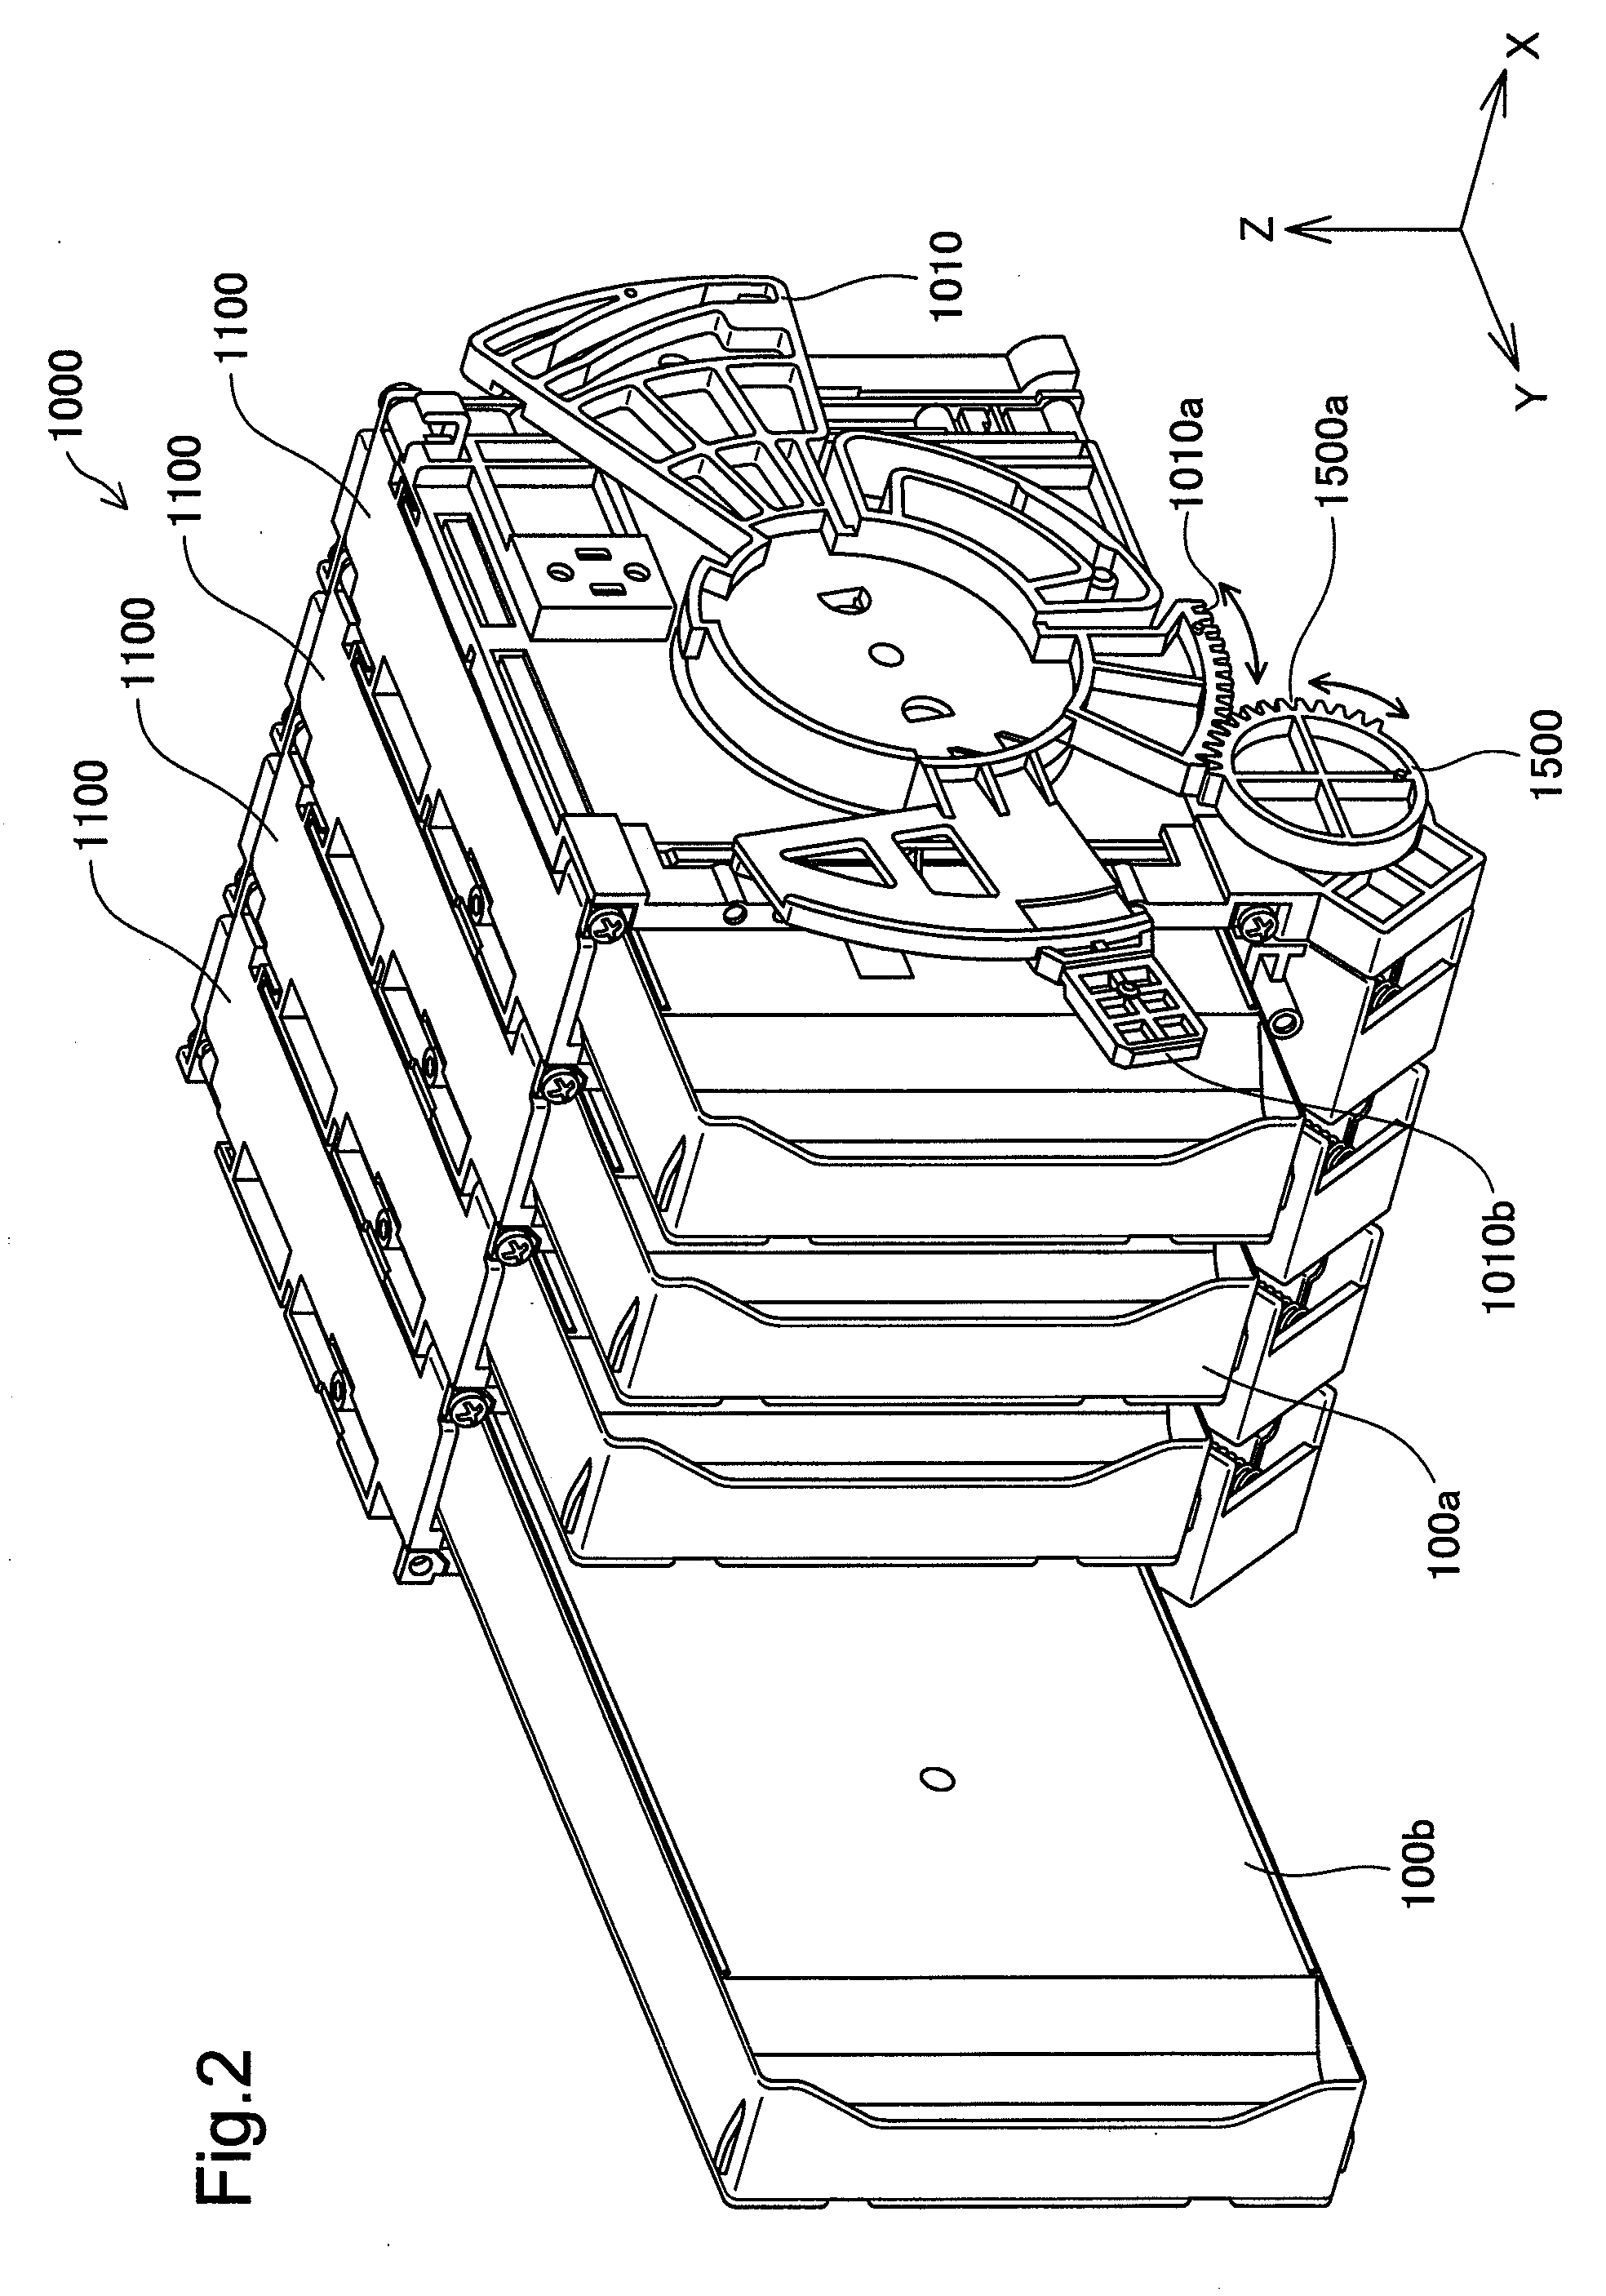 Liquid jetting system, liquid container, holder, and liquid jetting apparatus having holder